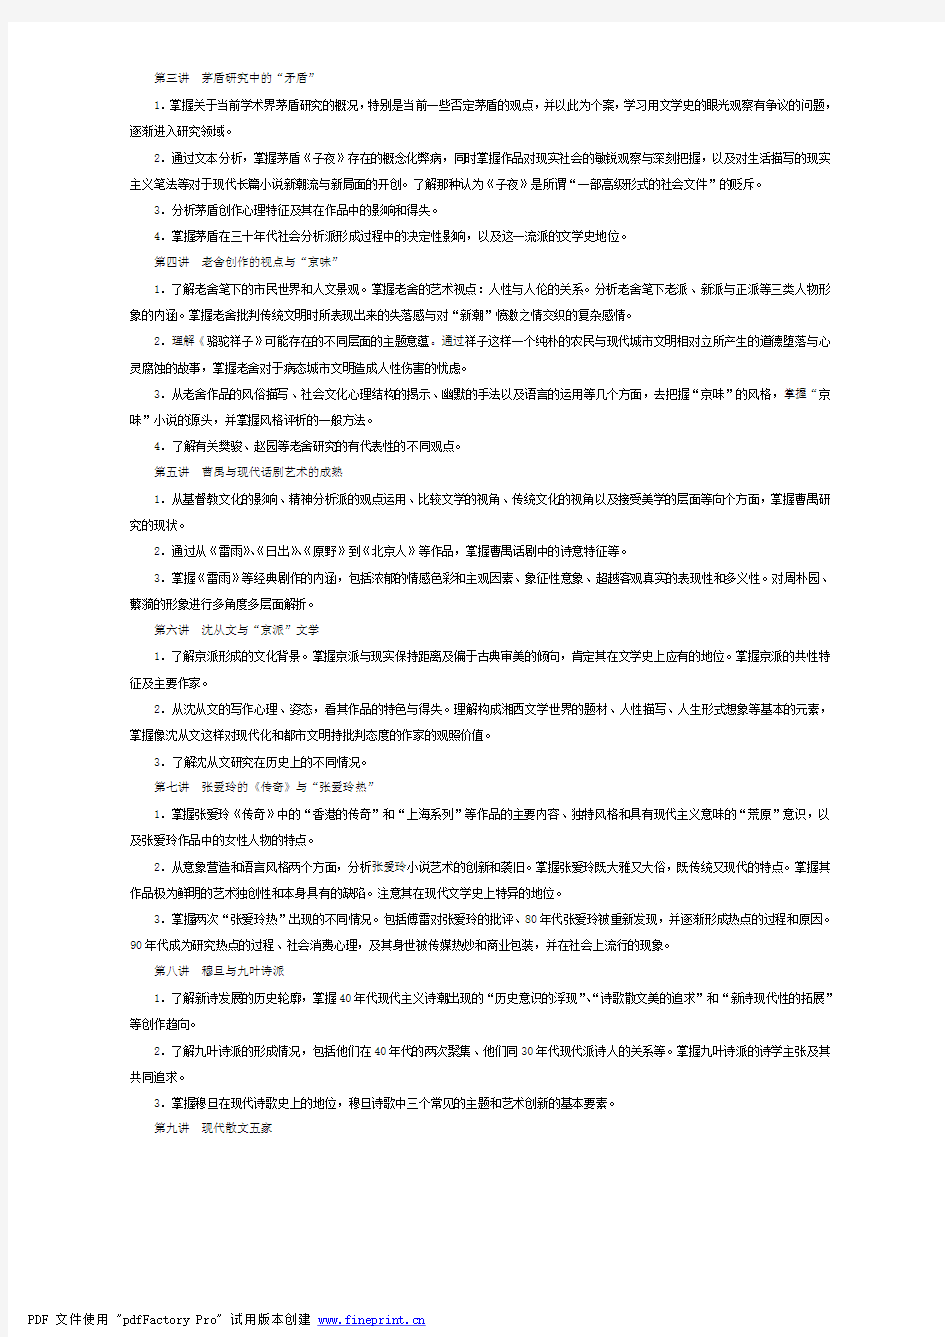 中央广播电视大学汉语言文学专业本科